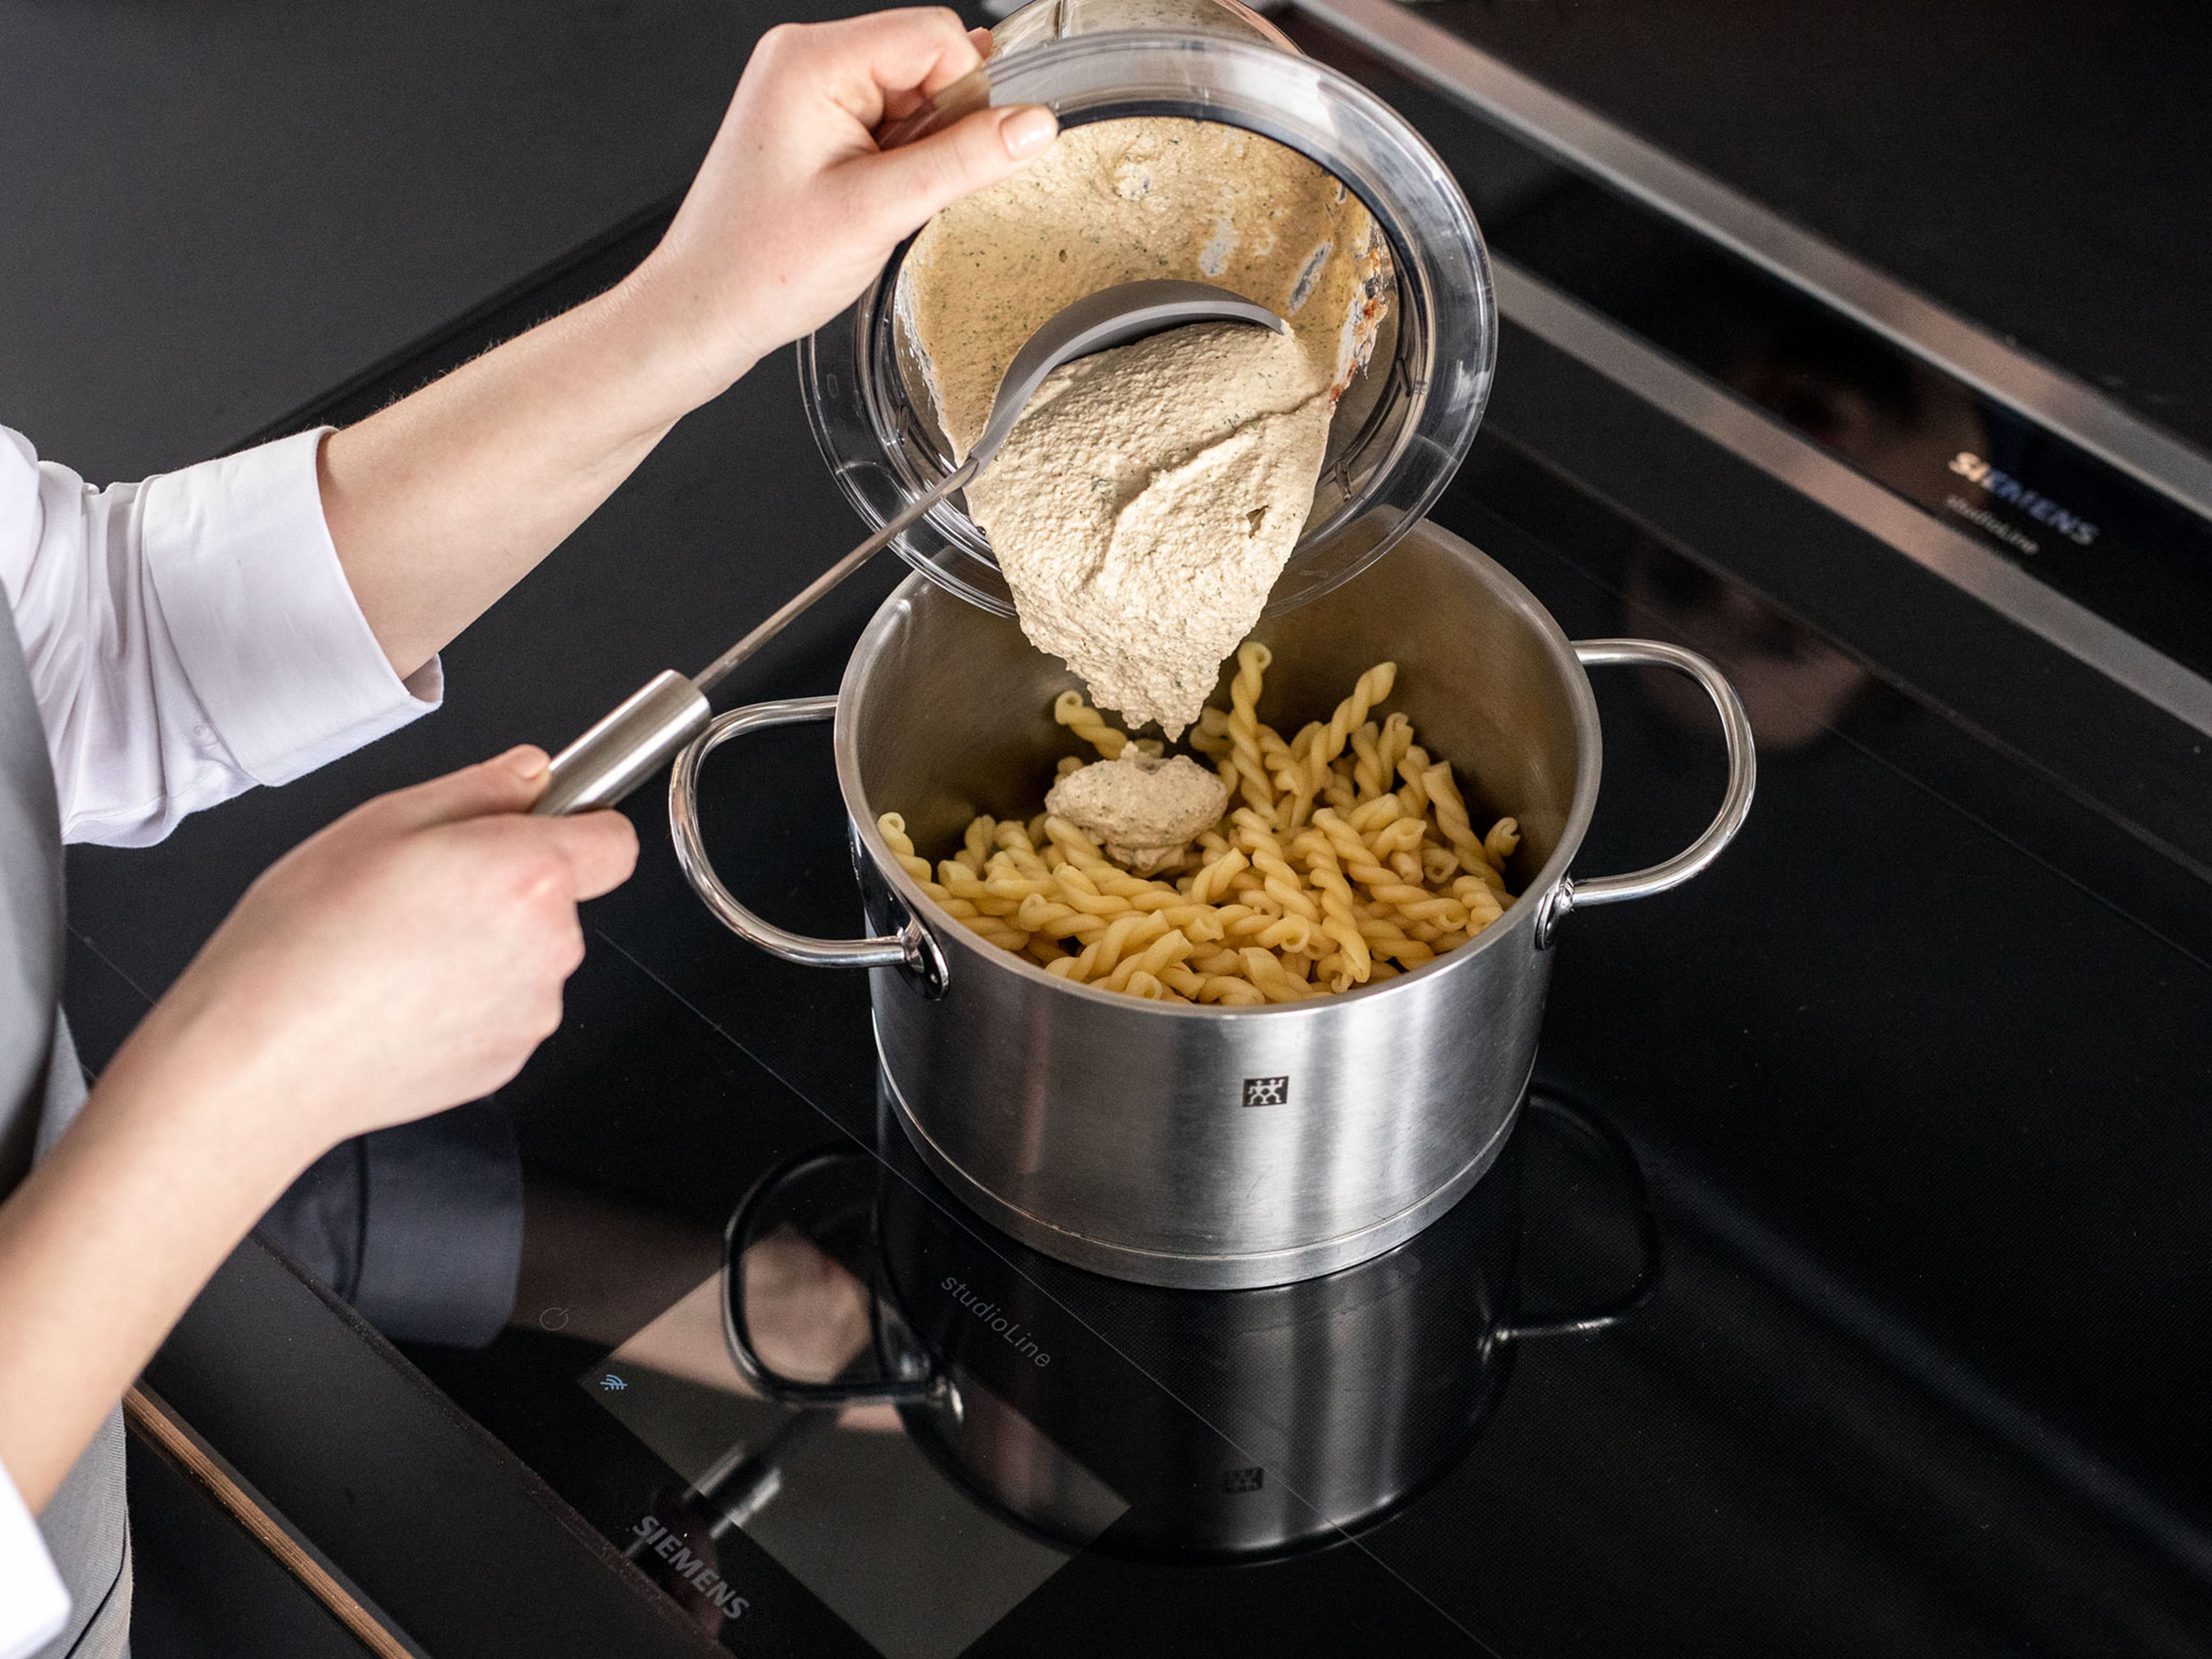 Einen Topf mit Wasser füllen und zum Kochen bringen. Pasta nach Packungsanweisung al dente kochen. Pasta abtropfen und im Topf mit dem Walnuss-Ricotta-Pesto vermischen. Guten Appetit!